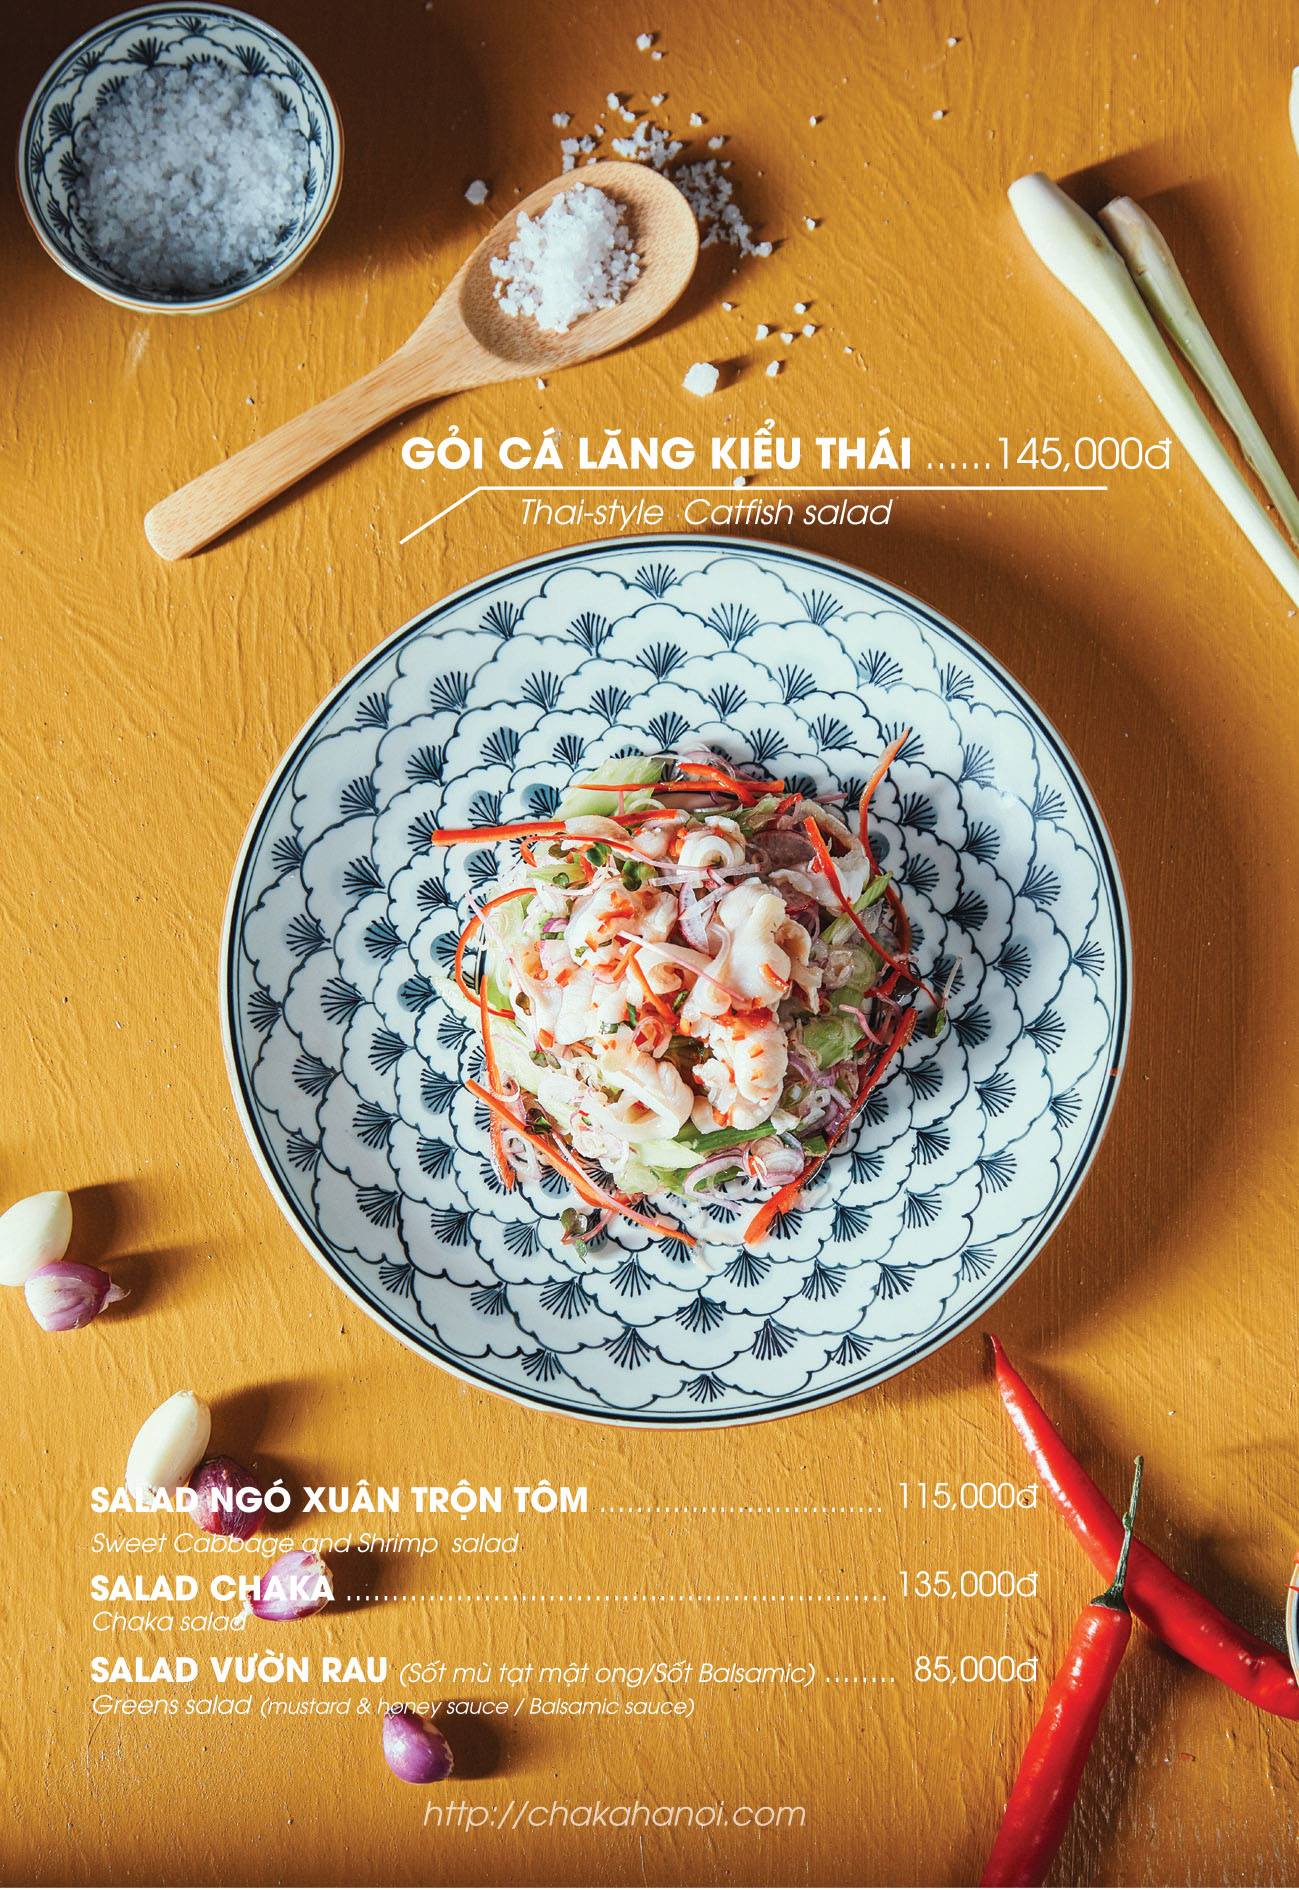 Chả Ká Restaurant – Nơi thưởng thức ẩm thực truyền thống đặc sắc chốn Hà Thành 5